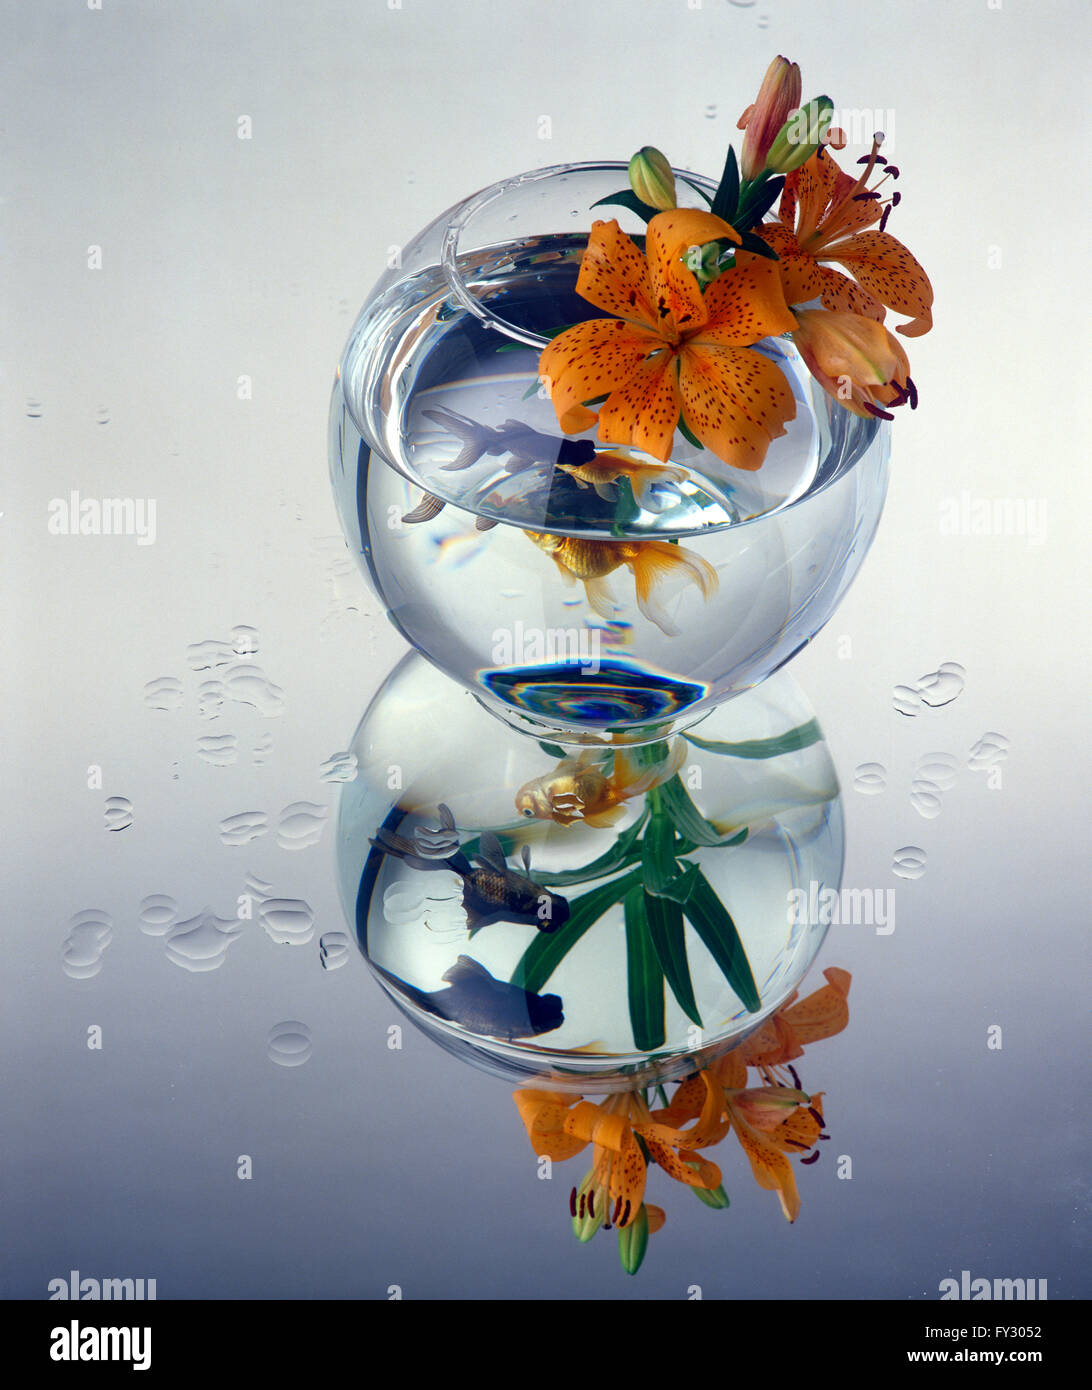 Un gros plan d'un bol contenant un poisson rouge et orange fleurs, à l'intérieur. Banque D'Images